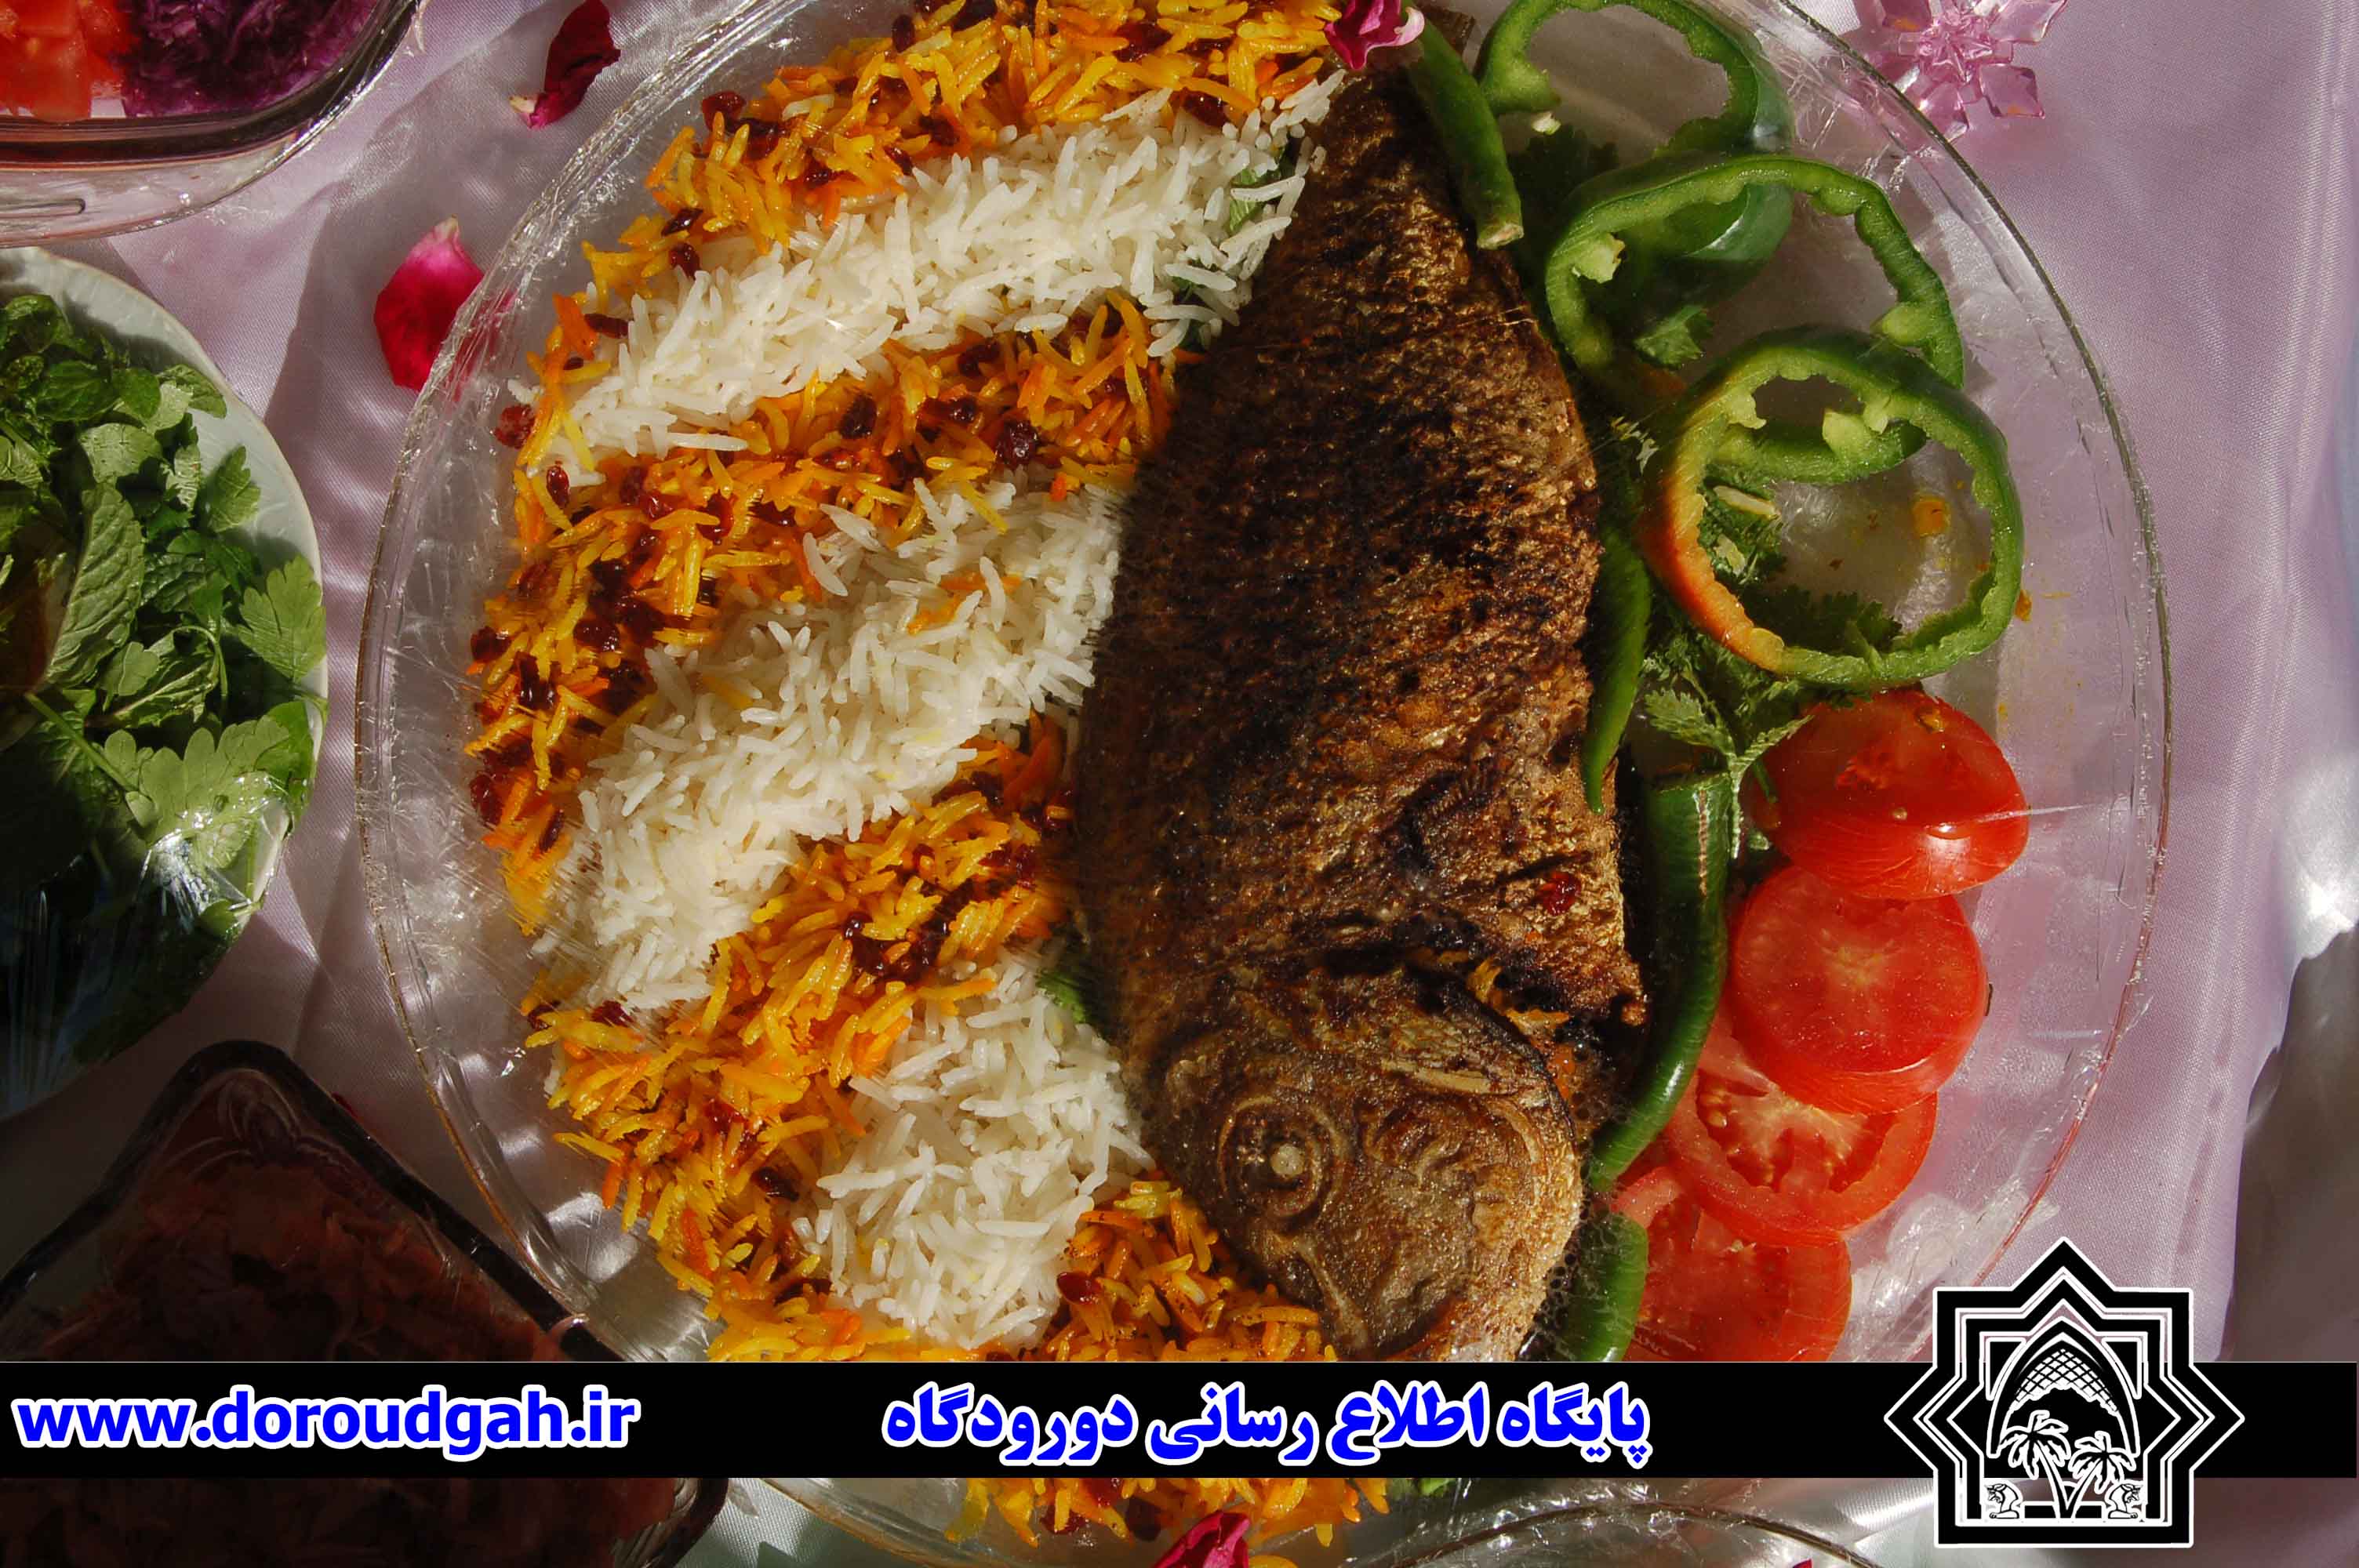 مراسم گرامیداشت دهه فجر و جشنواره غذا های محلی در دبیرستان دخترانه زینبیه دورودگاه + تصاویر 